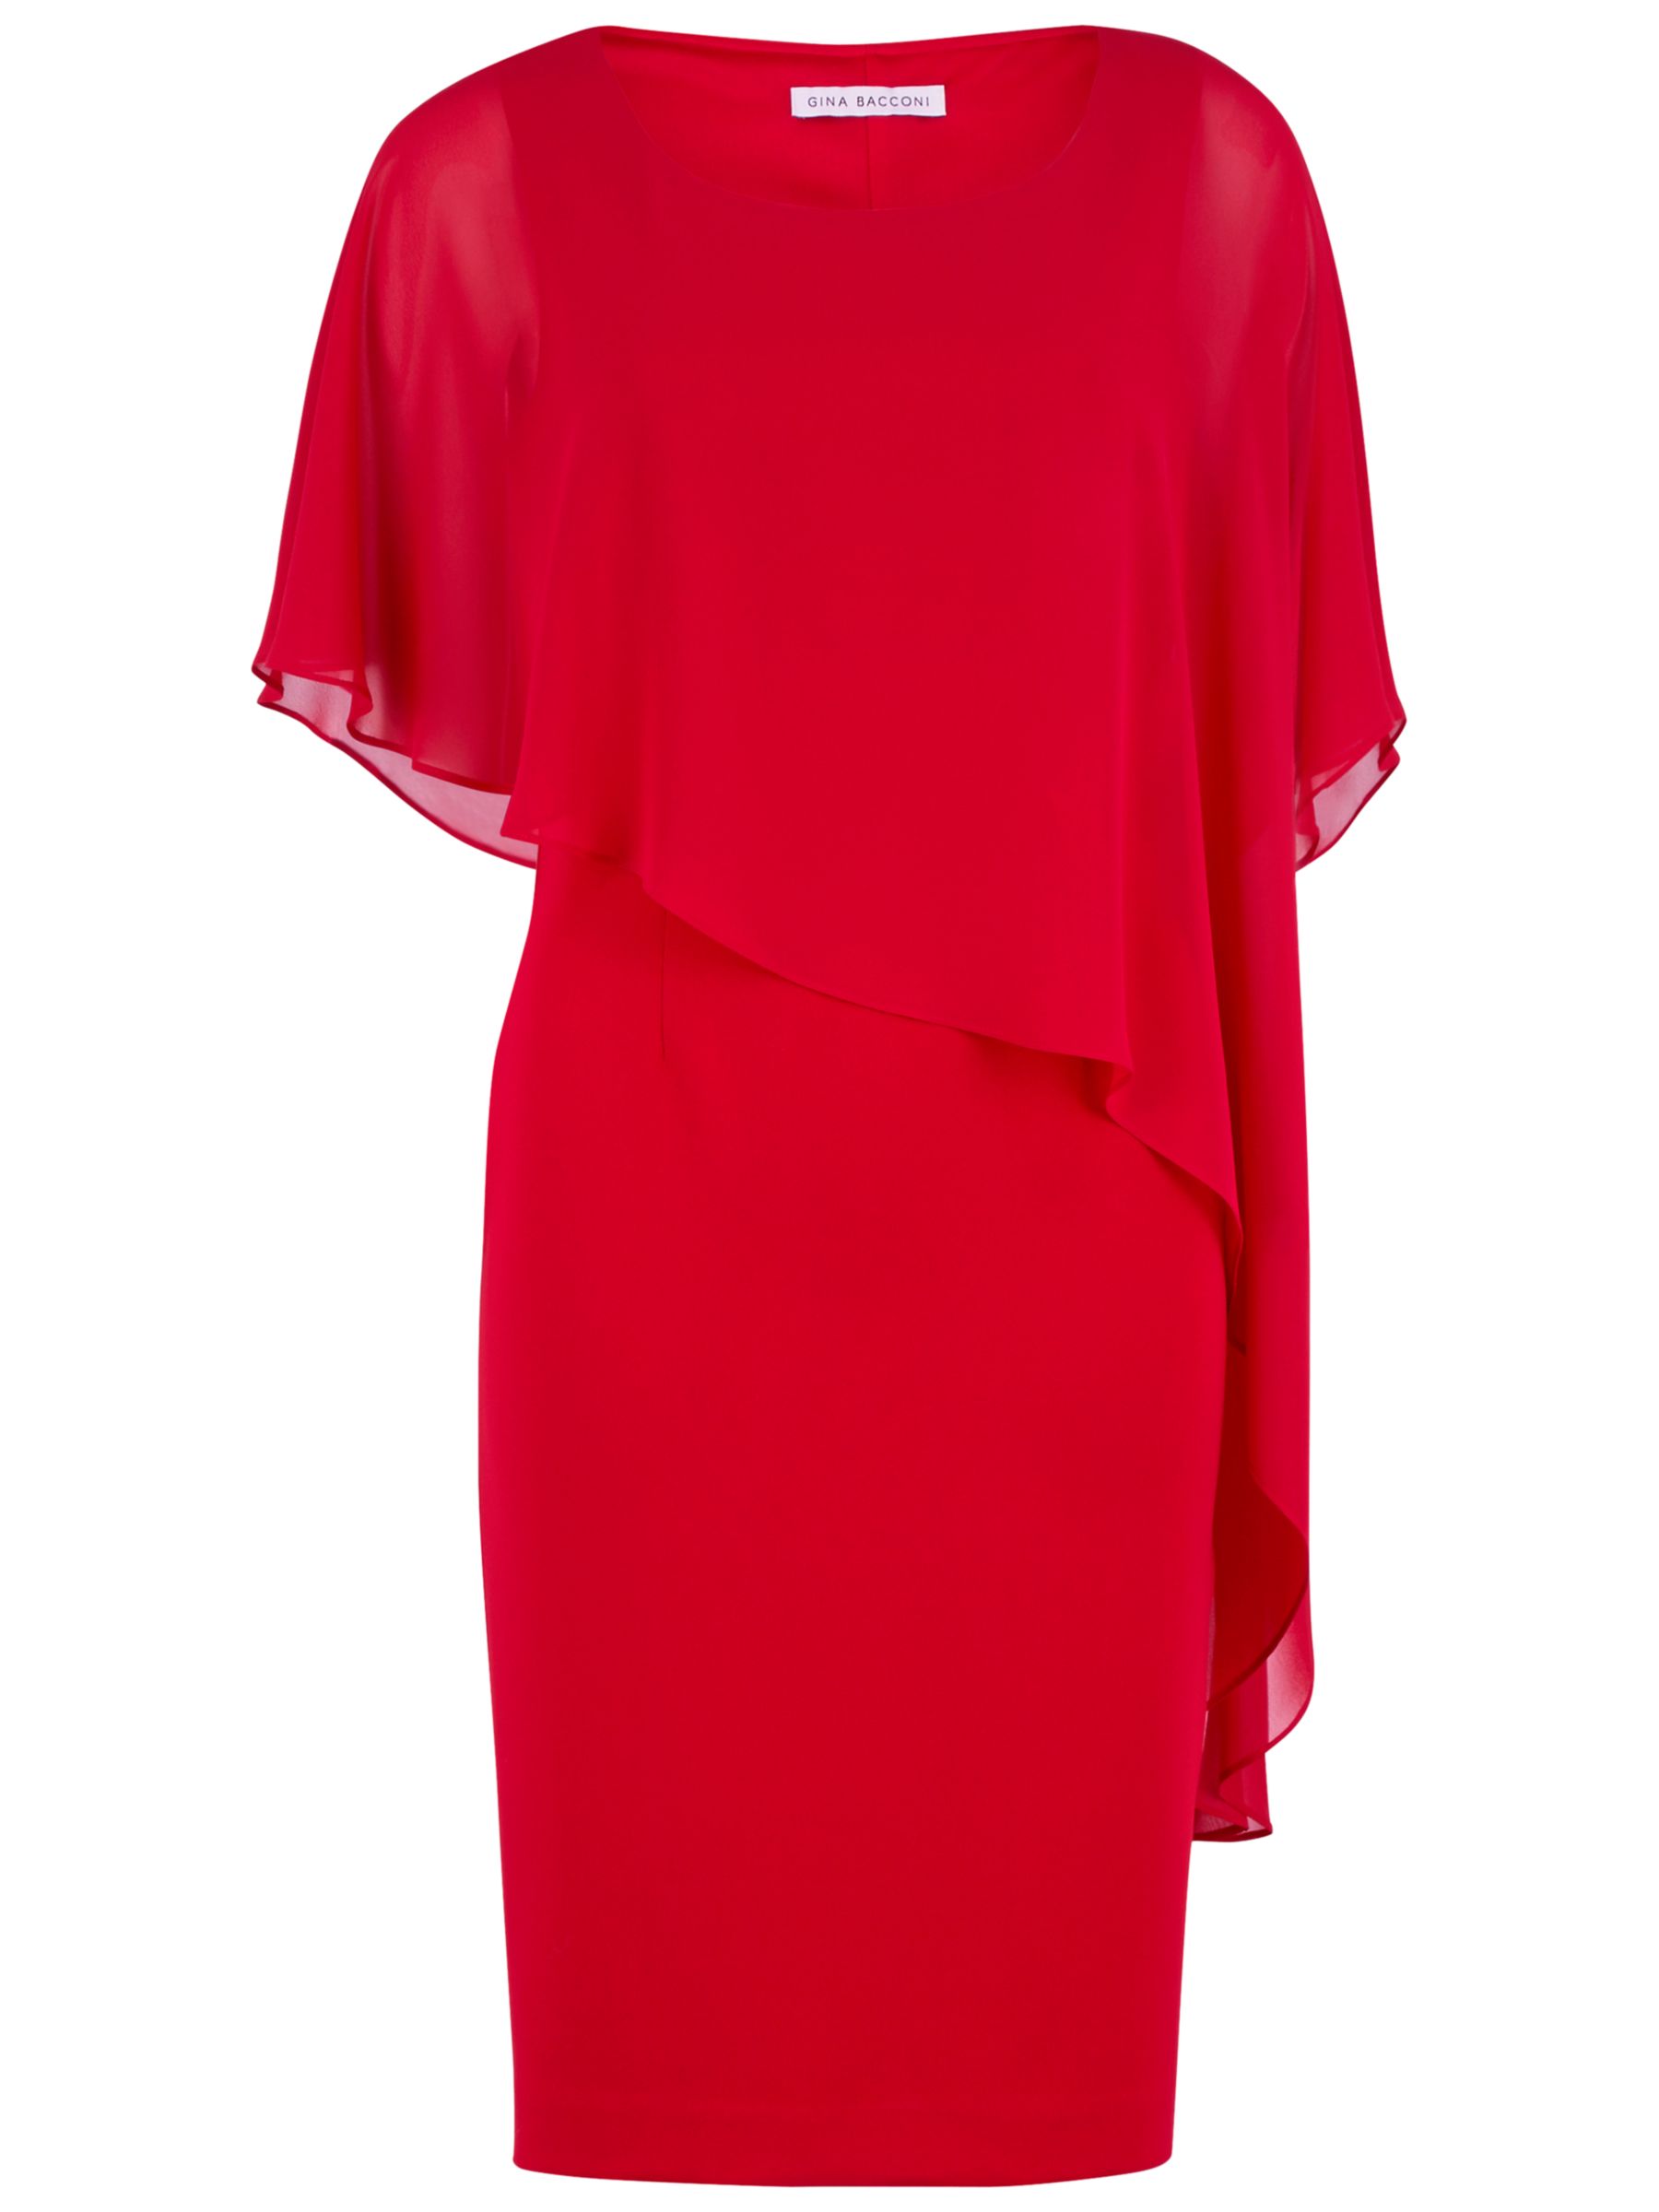 Gina Bacconi Moss Crepe Dress And Chiffon Cape, Red, 10